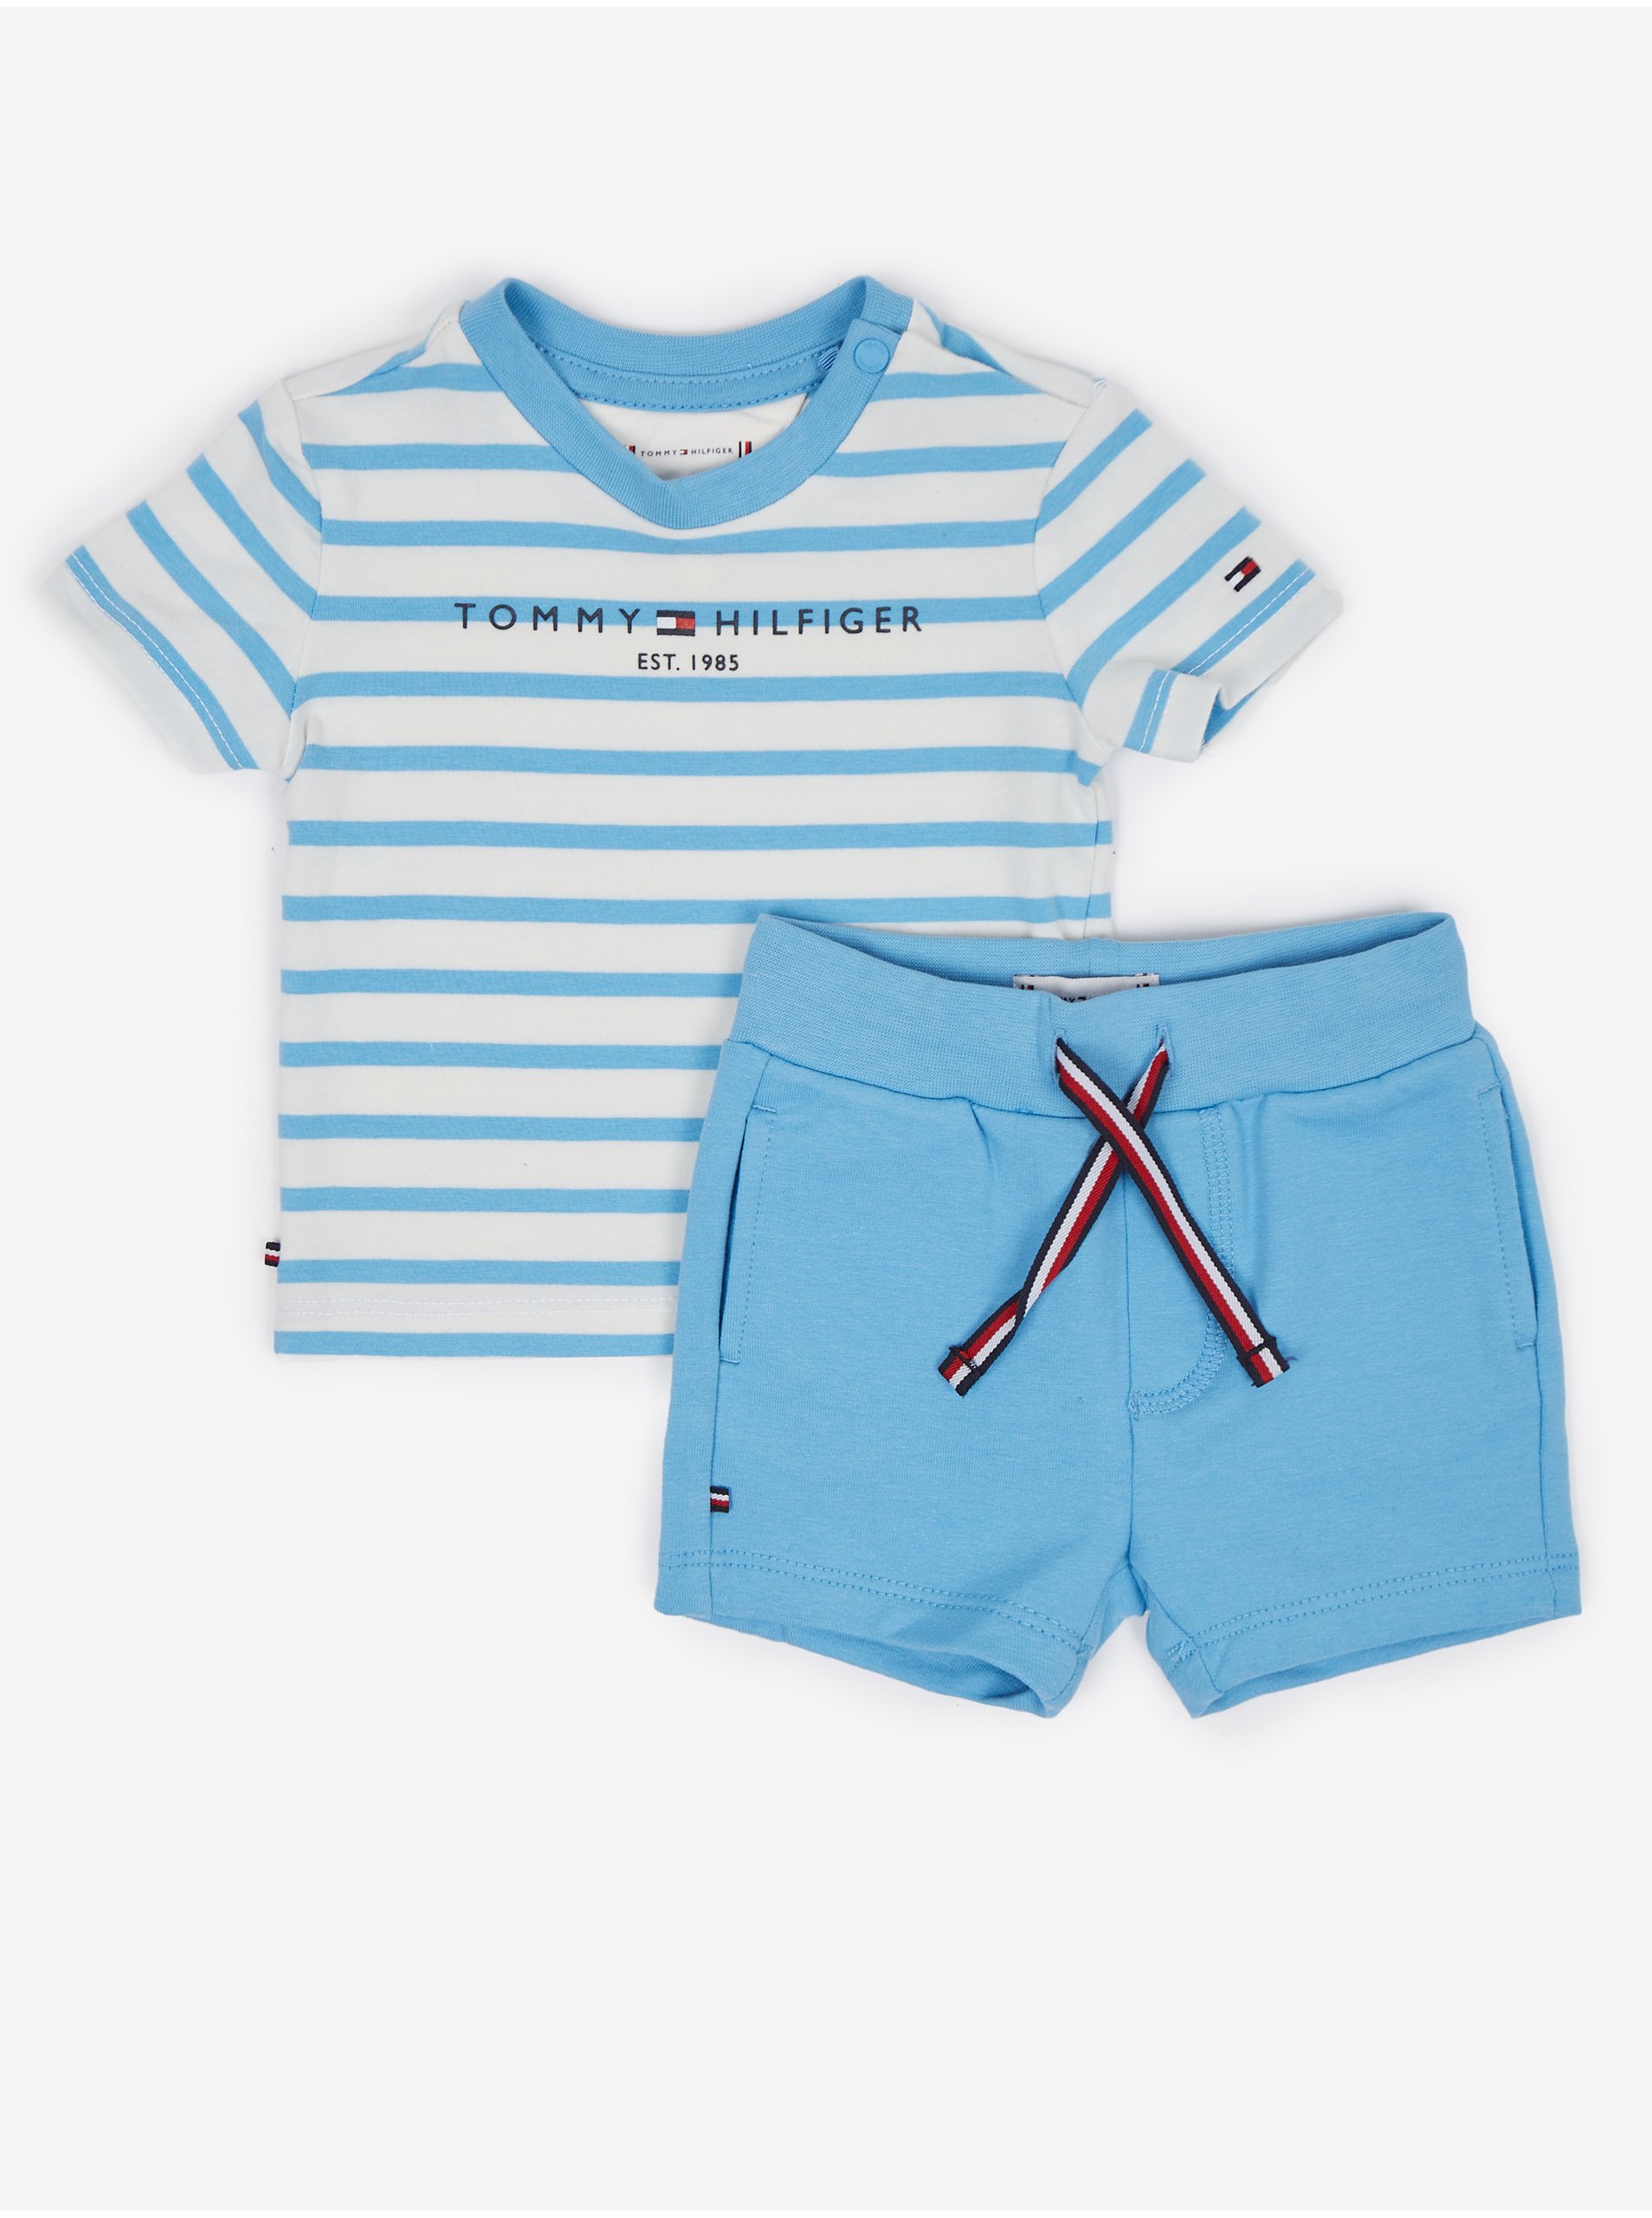 Levně Sada klučičího pruhovaného trička a kraťasů v modro-bílé barvě Tommy Hilfiger